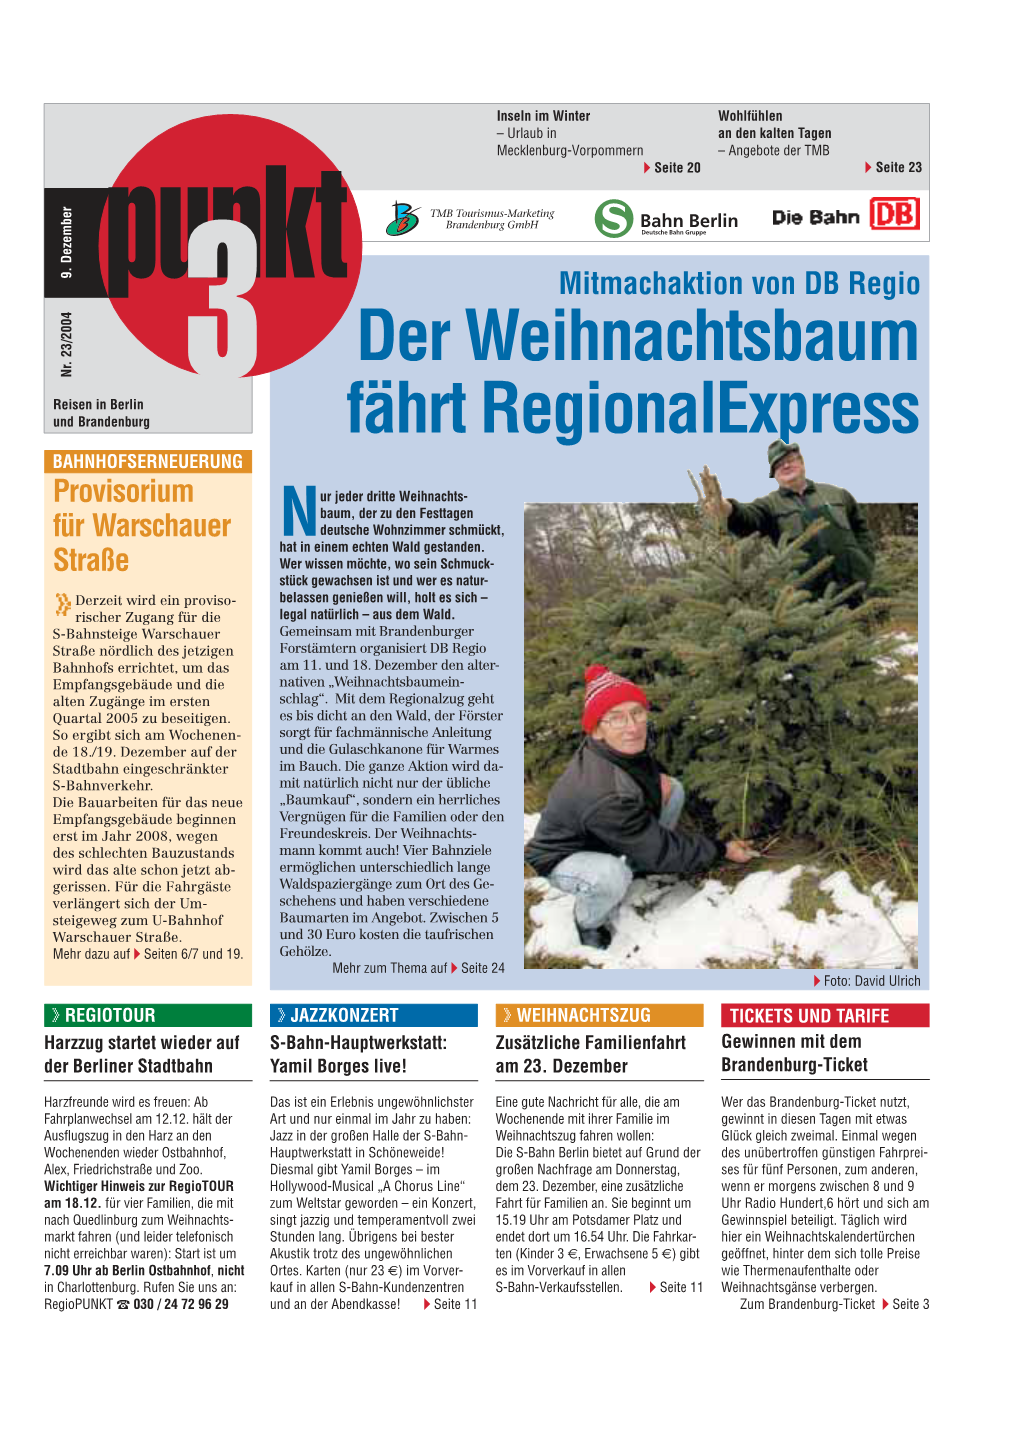 Der Weihnachtsbaum Fährt Regionalexpress